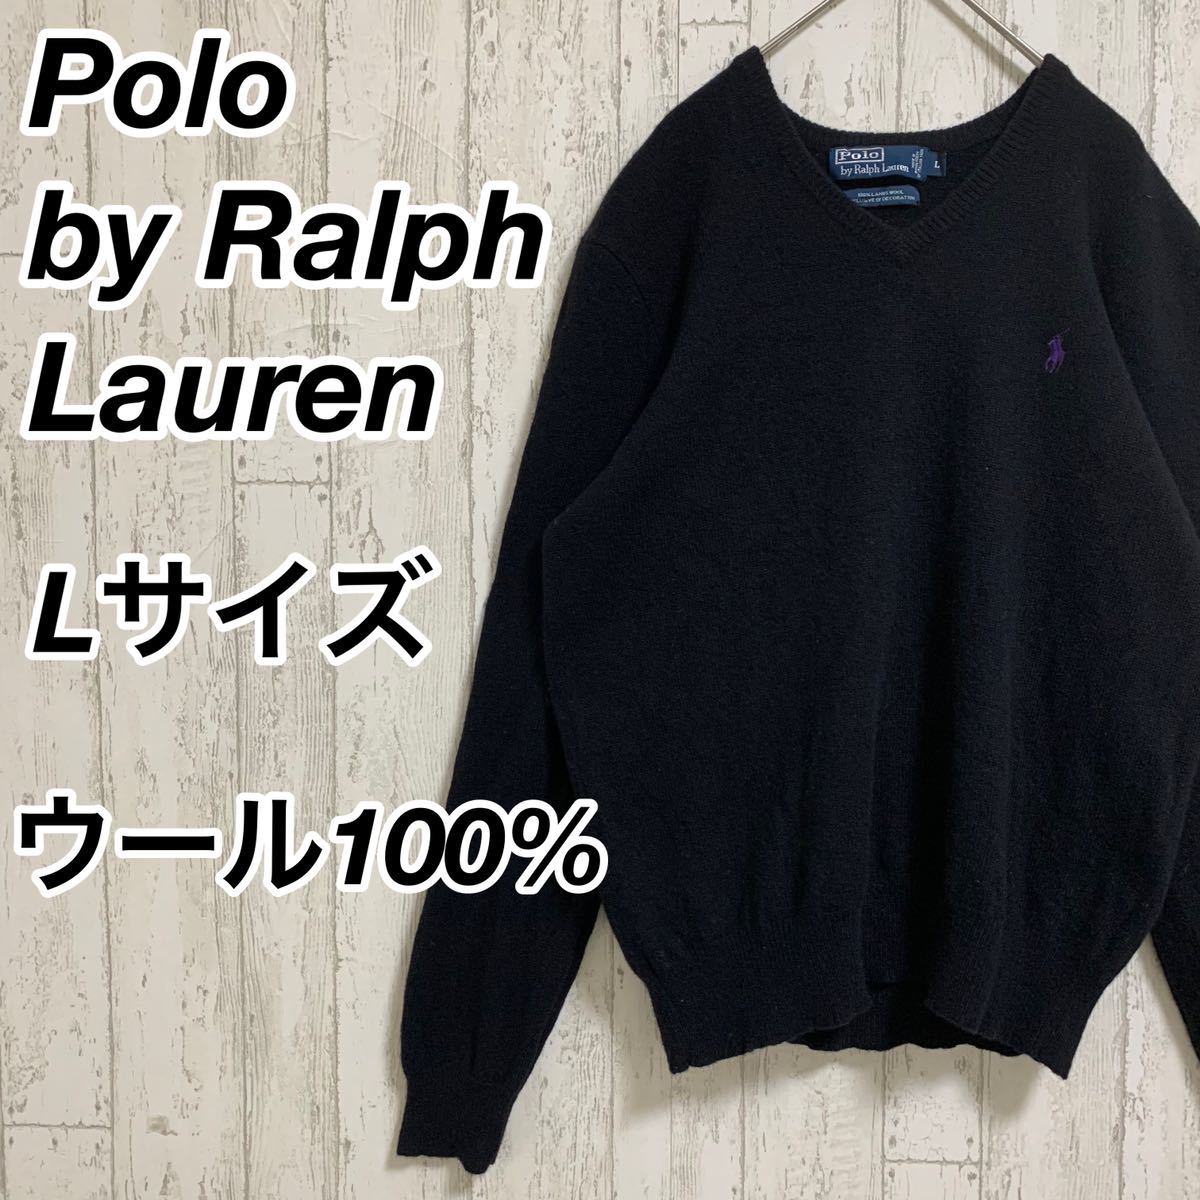 【Polo by Ralph Lauren】 ポロバイラルフローレン ニット セーター 100% ウール生地 刺繍ロゴ ラベンダー ポニー